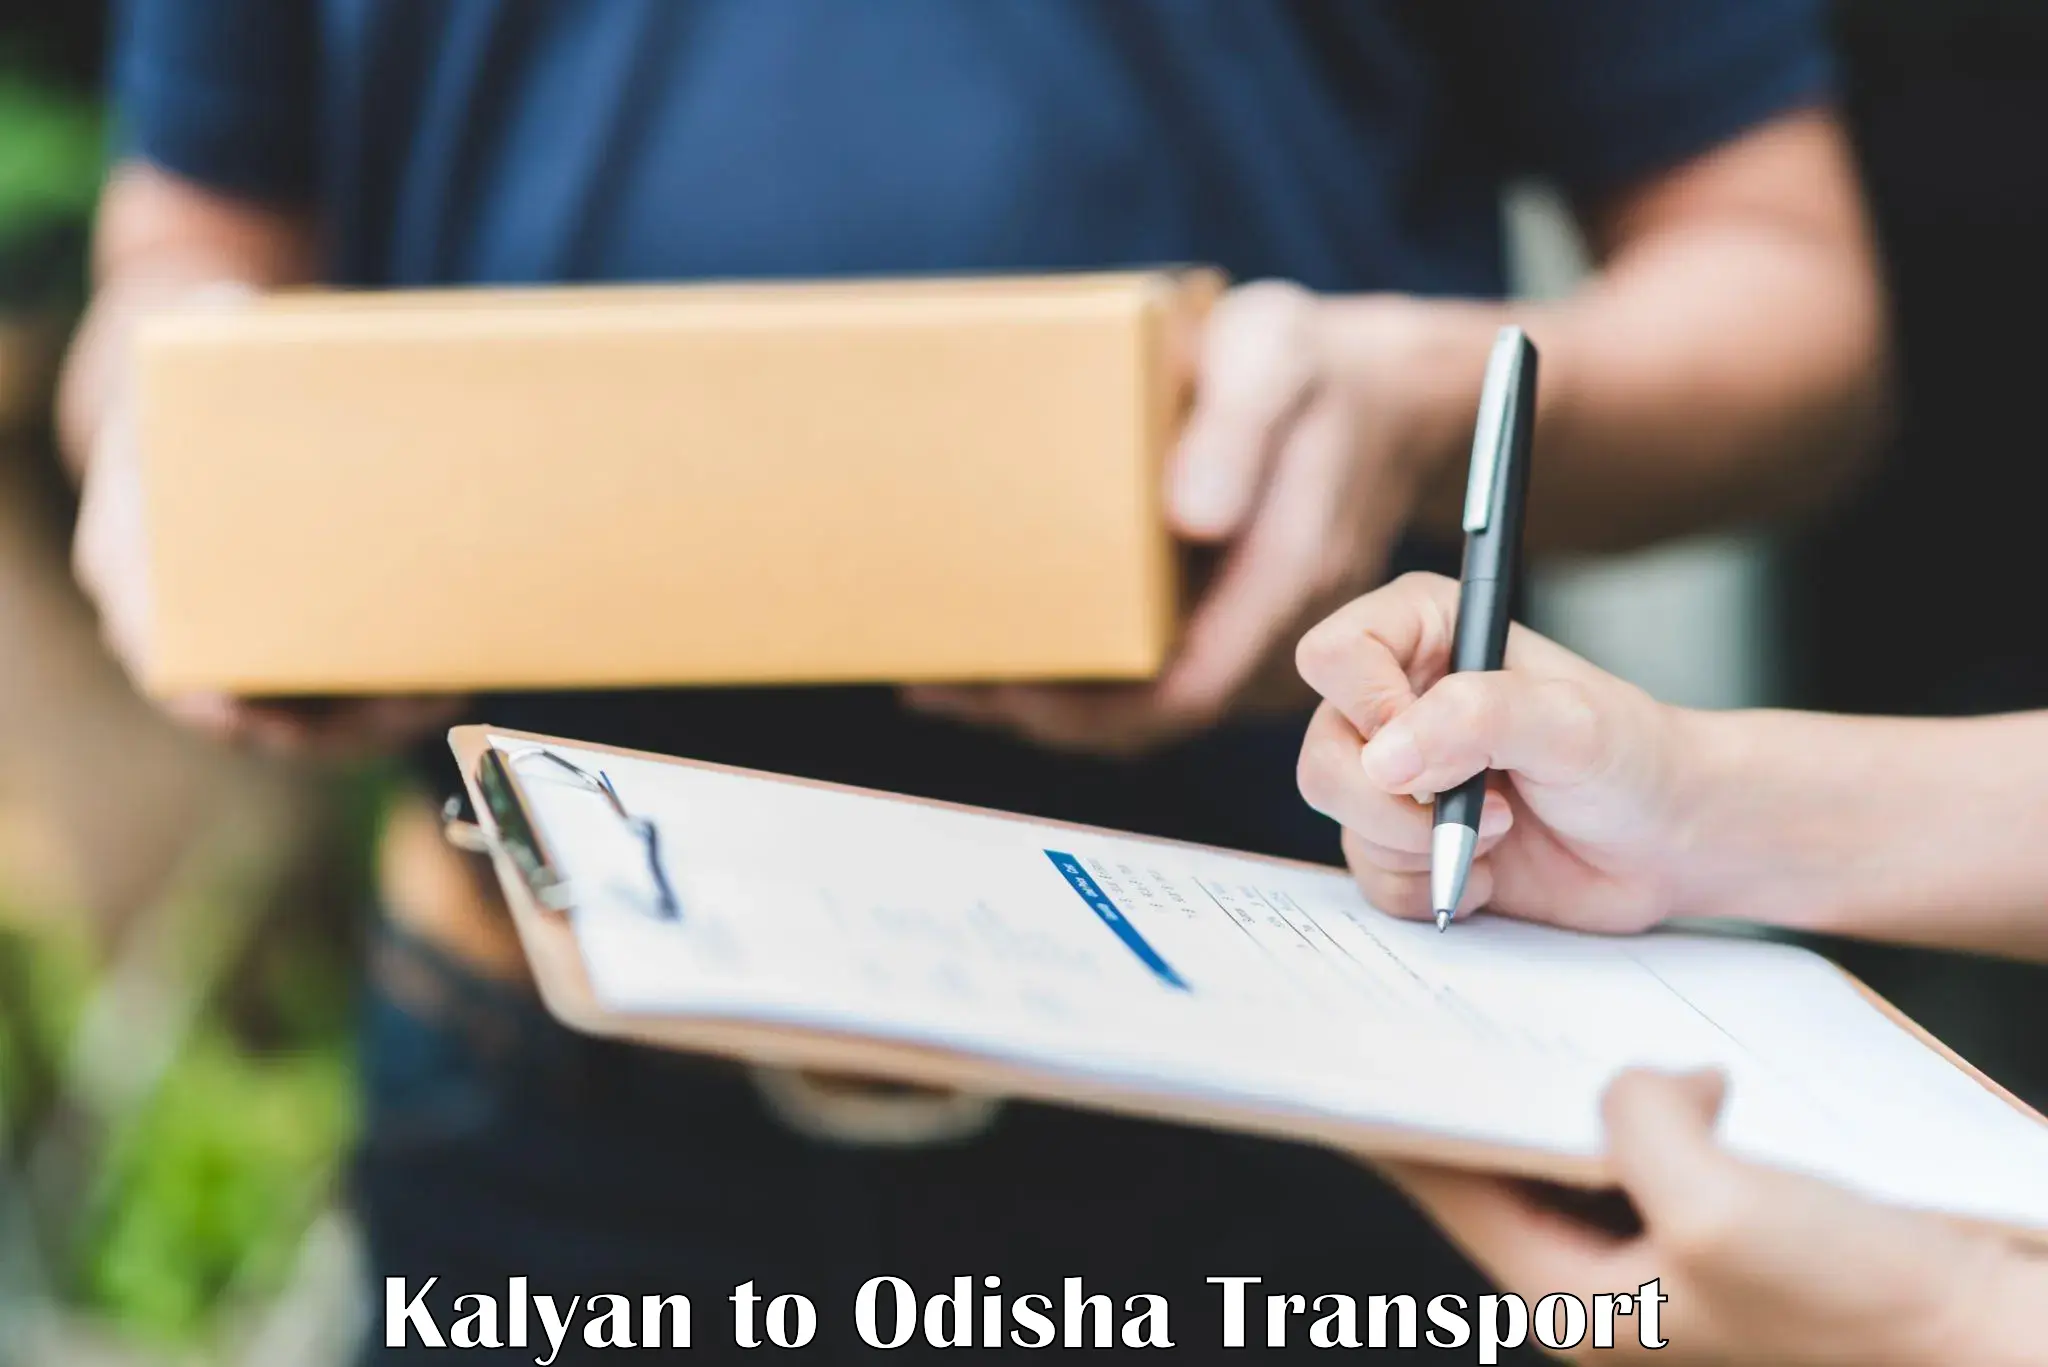 Cycle transportation service Kalyan to Dhenkanal